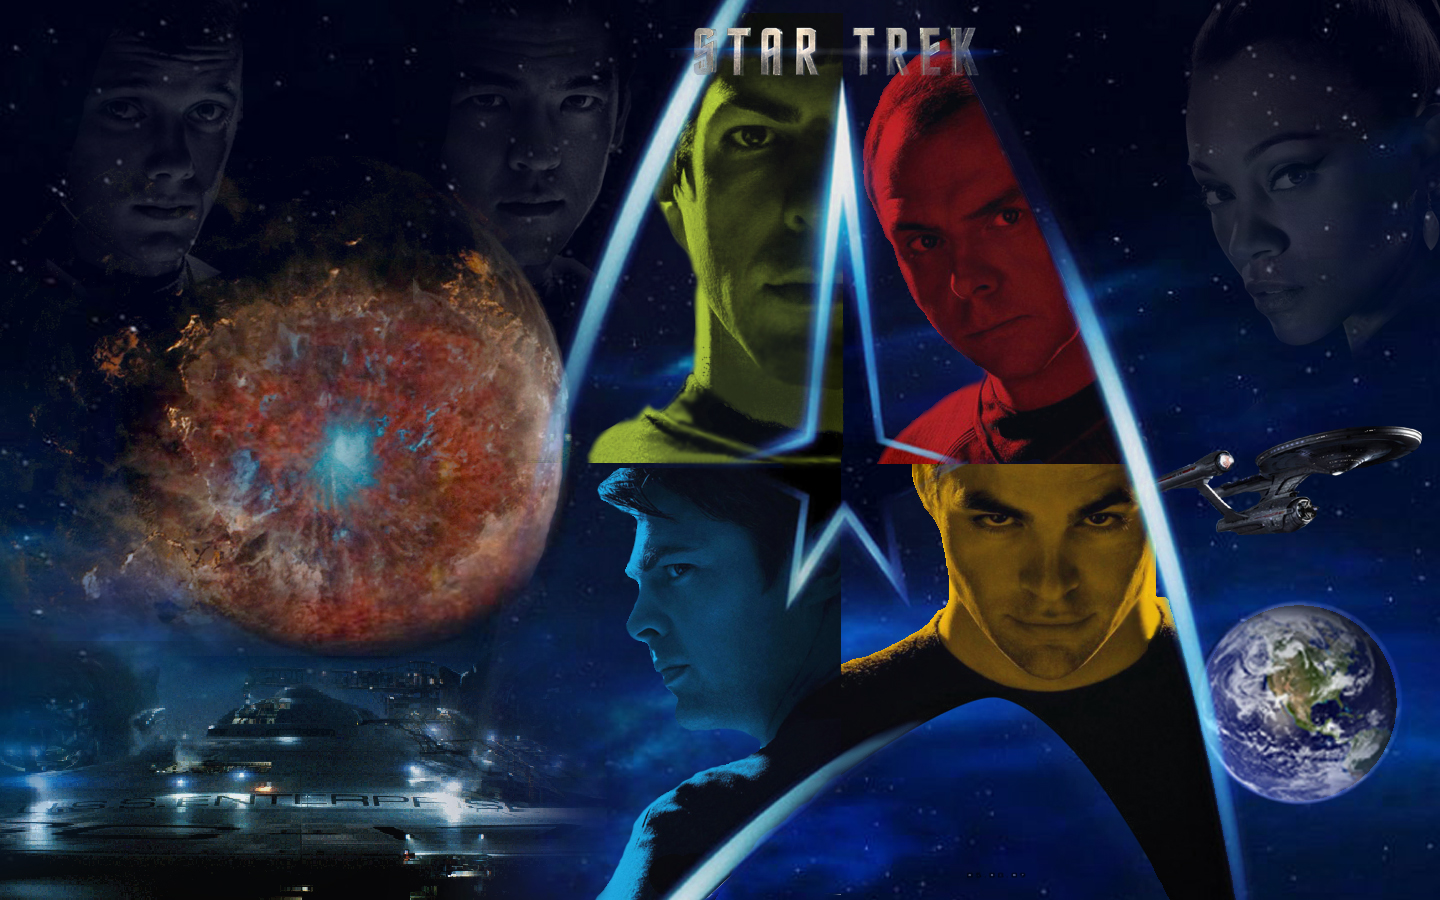 Download HQ Star Trek 2009 wallpaper / Movies / 1440x900